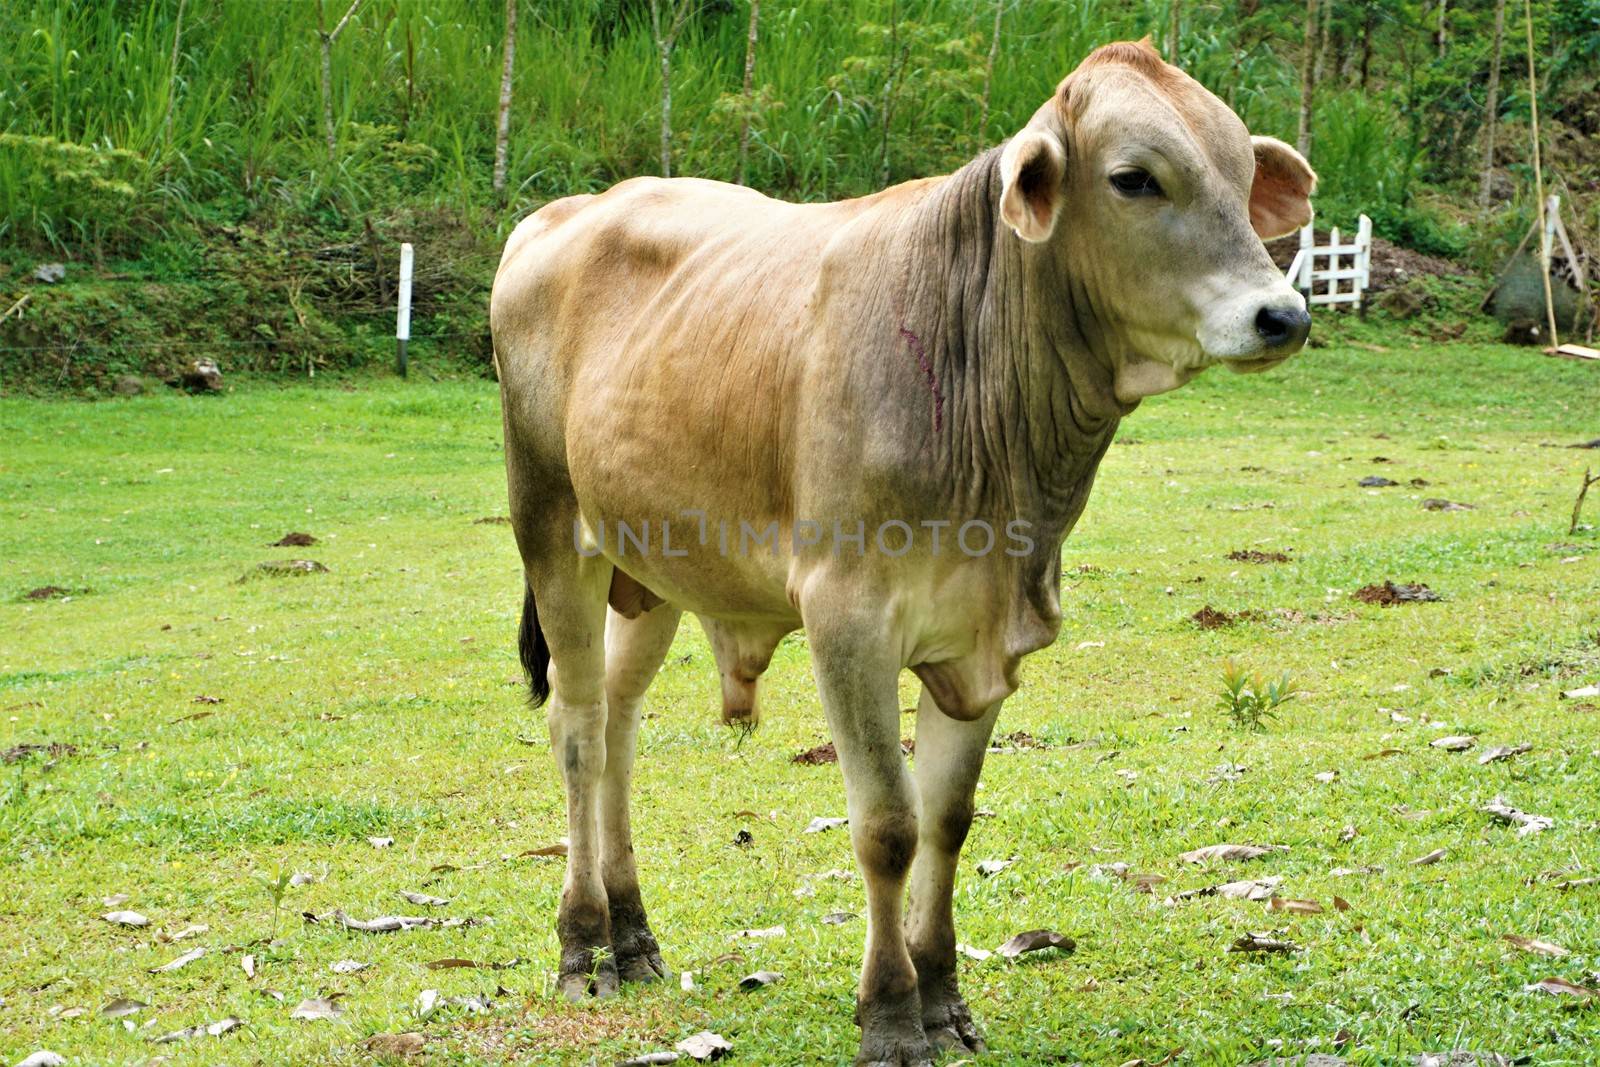 Cow on a meadow near San Isidro de El General, Costa Rica